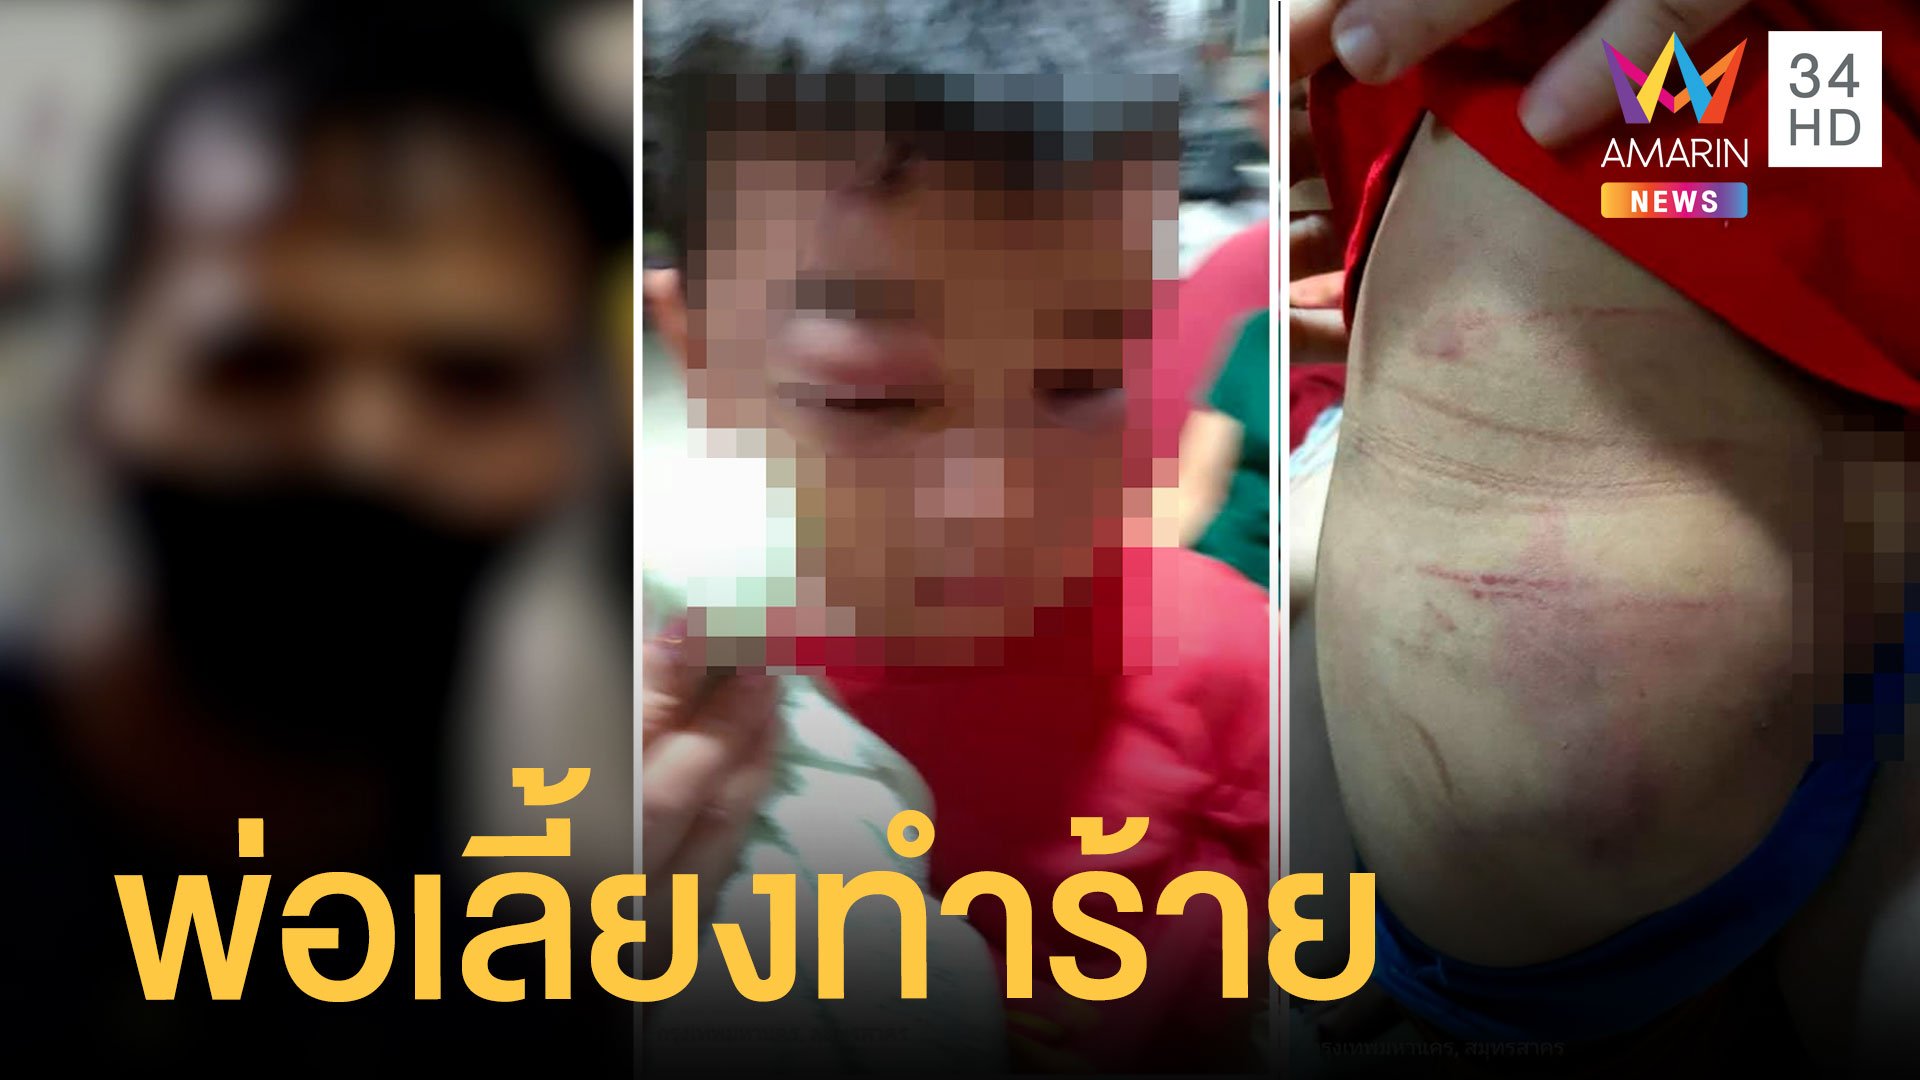 ฮือช่วยเด็ก 6 ขวบถูกพ่อเลี้ยงตบตีจนตาปูด | ข่าวเที่ยงอมรินทร์ | 14 ก.ค. 64 | AMARIN TVHD34